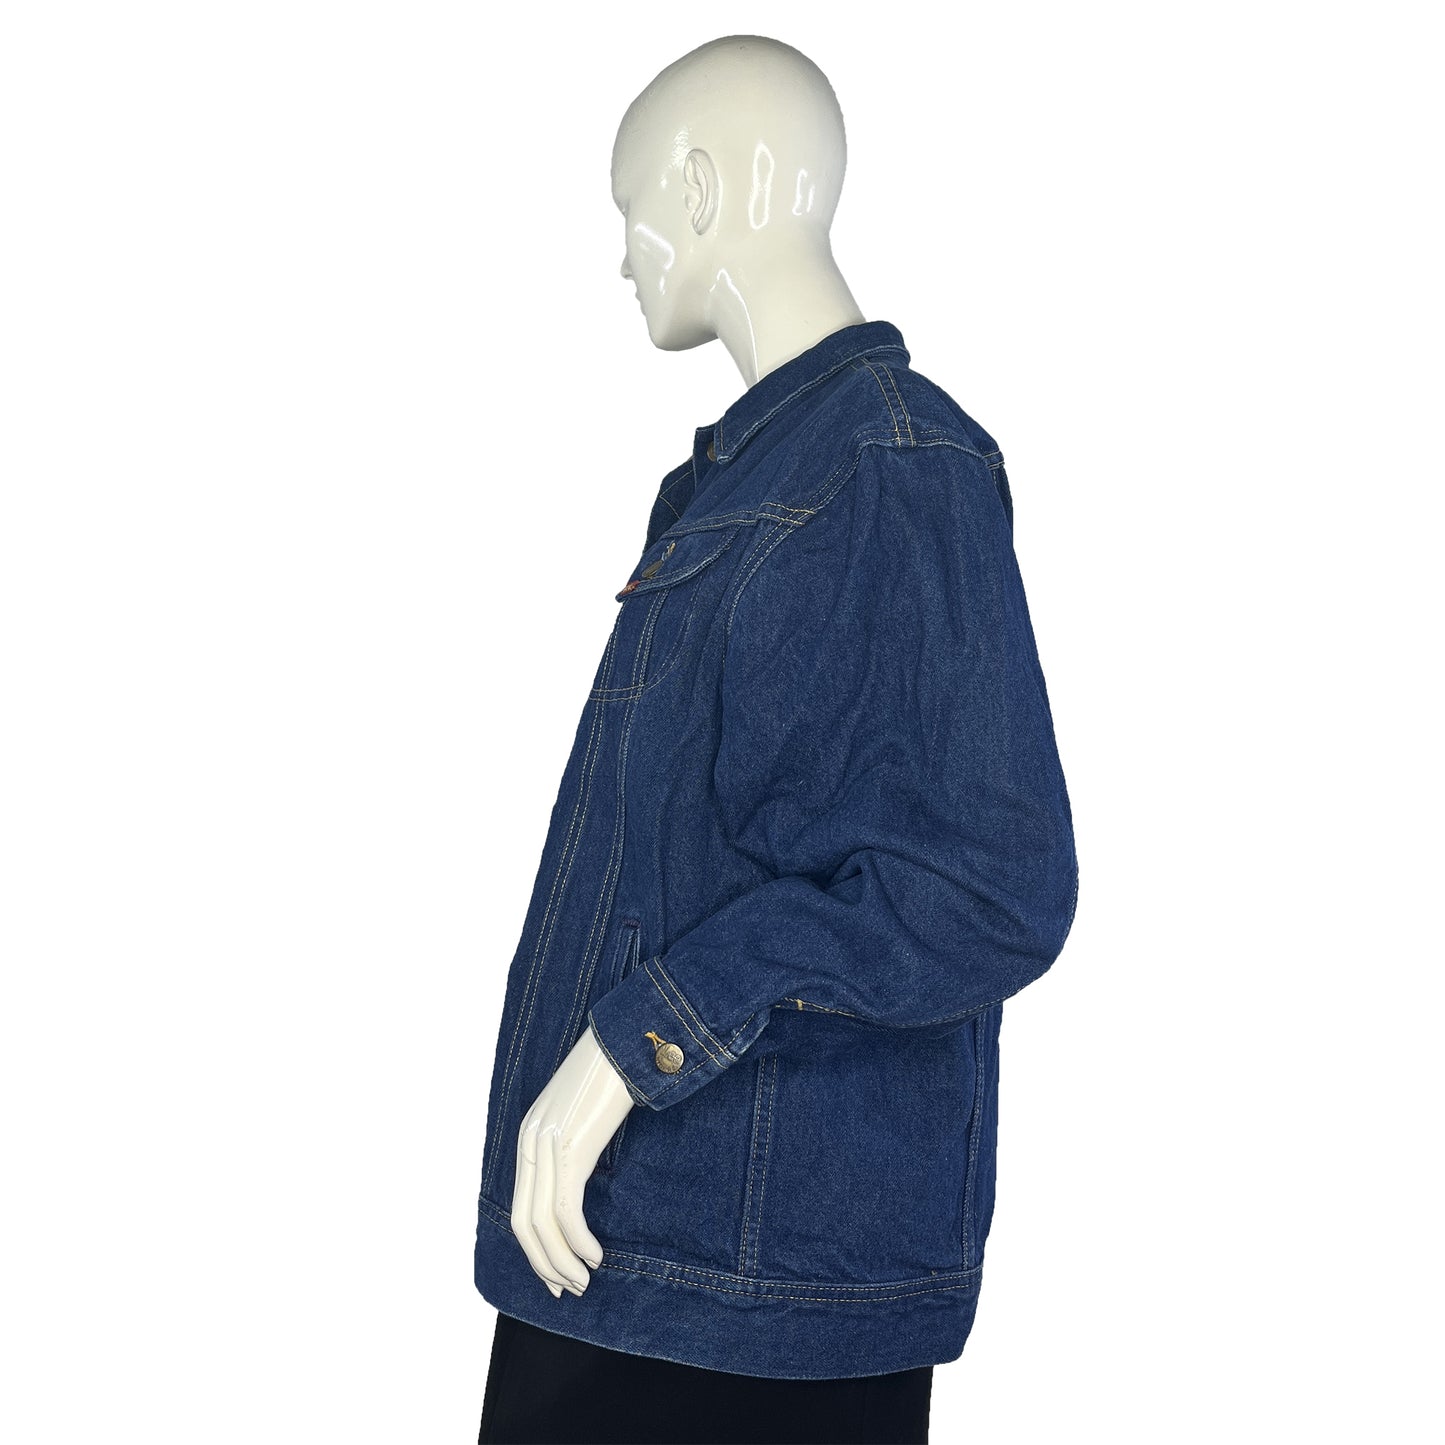 Lee Denim Jacket Button Down Dark Blue Size M/L SKU 000029